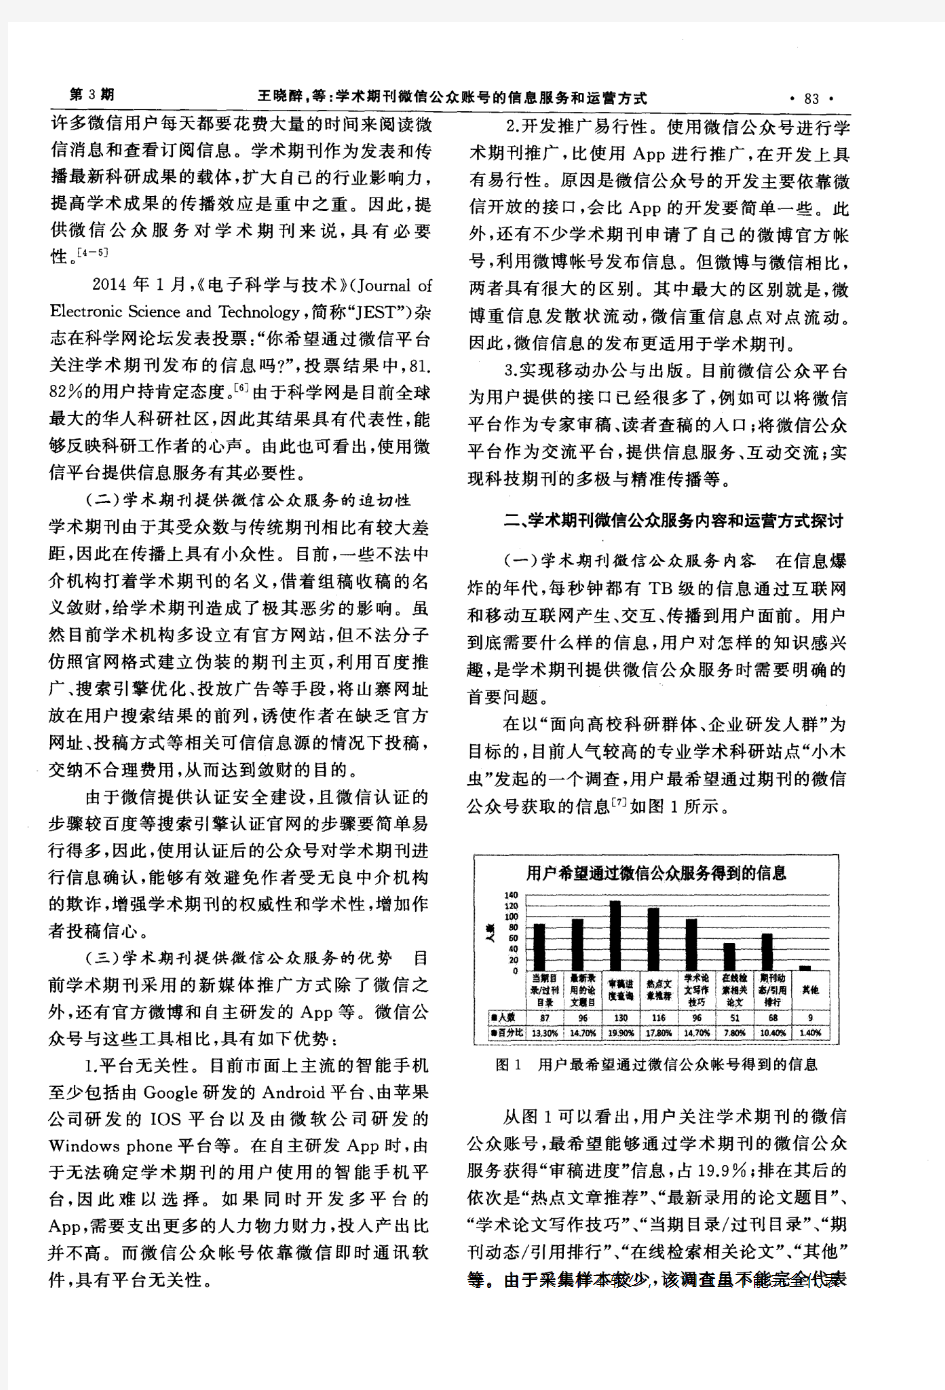 学术期刊微信公众账号的信息服务和运营方式——以《武汉大学学报·信息科学版》为例(PDF X页)